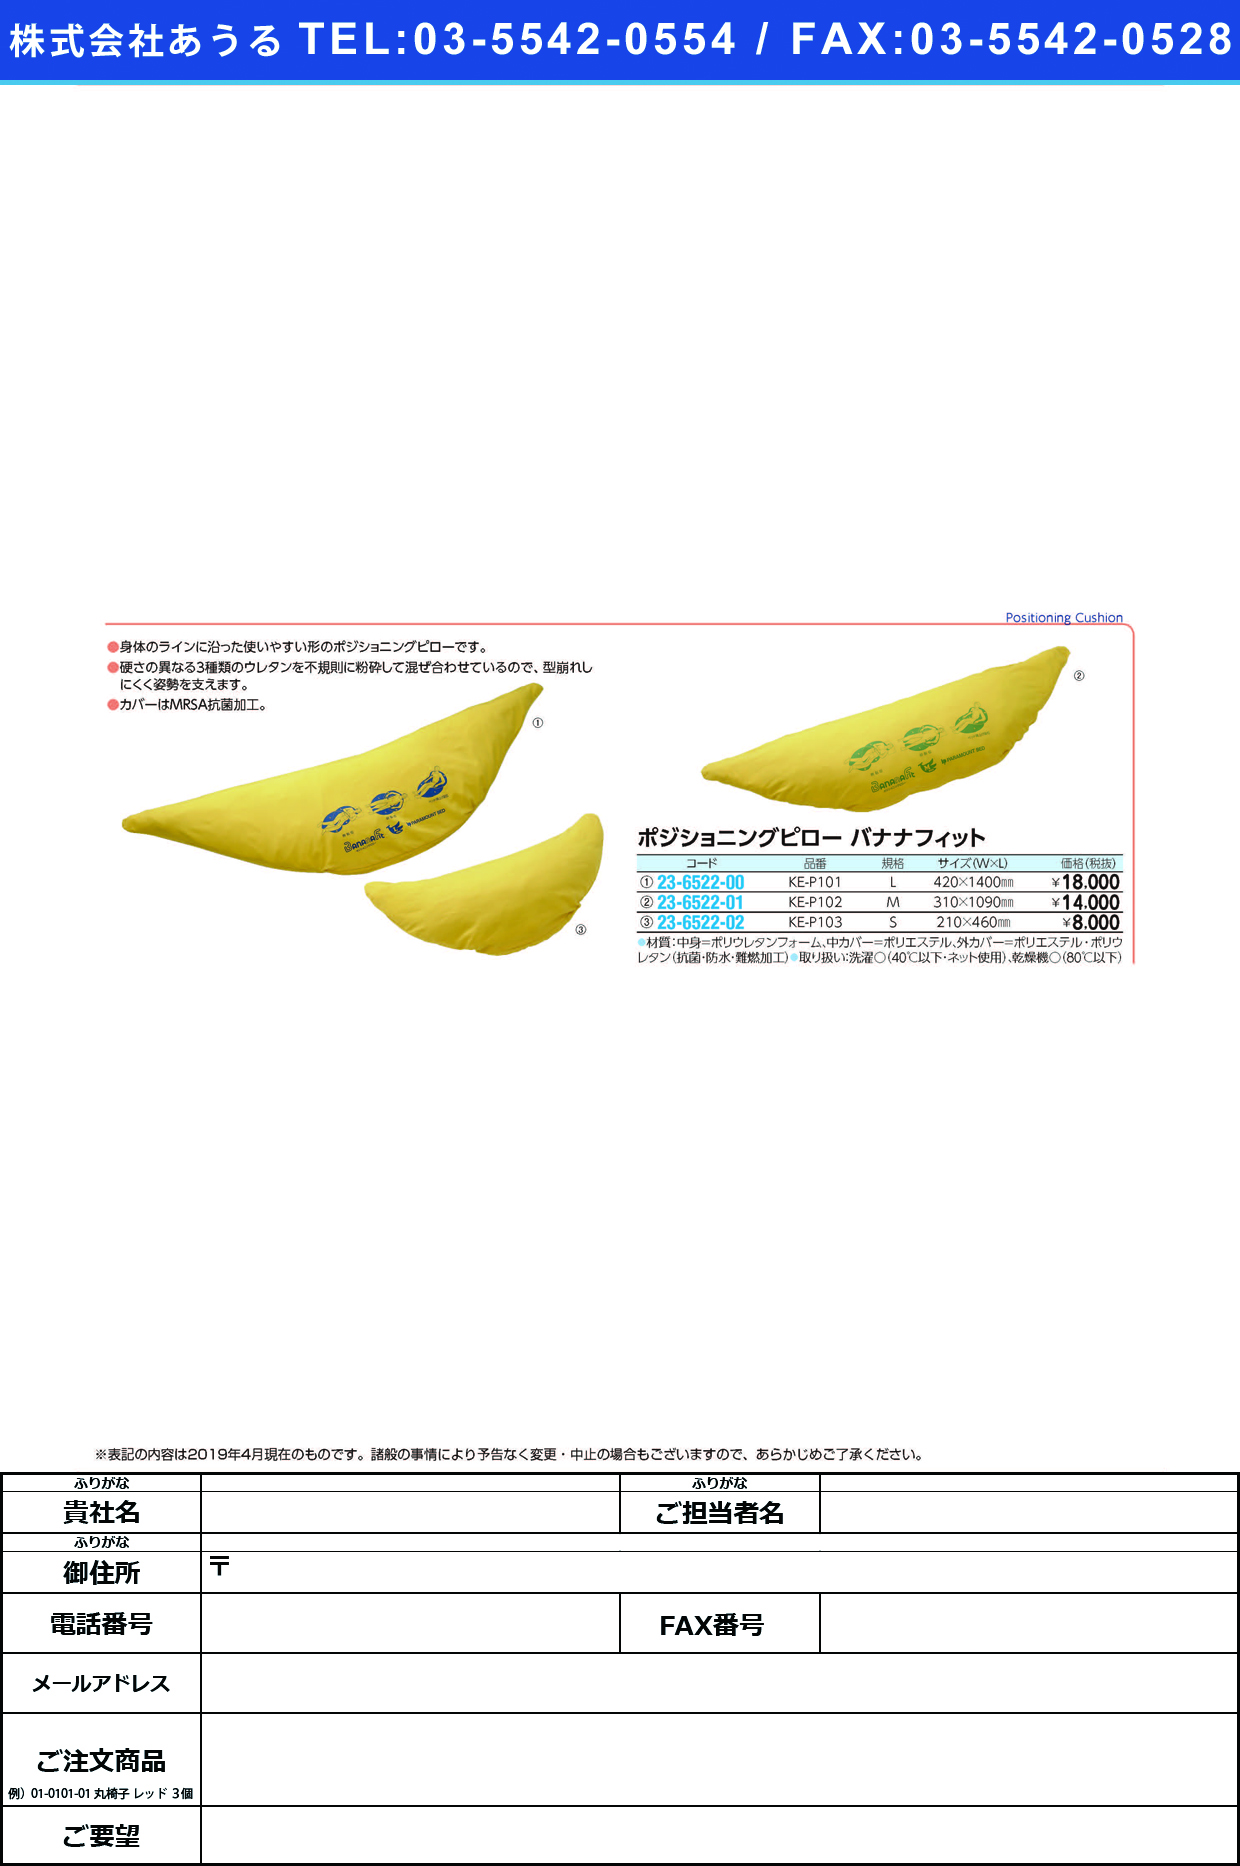 ポジショニングピローバナナフィット KE-P103(S) ﾊﾞﾅﾅﾌｨｯﾄ(パラマウントベッド)